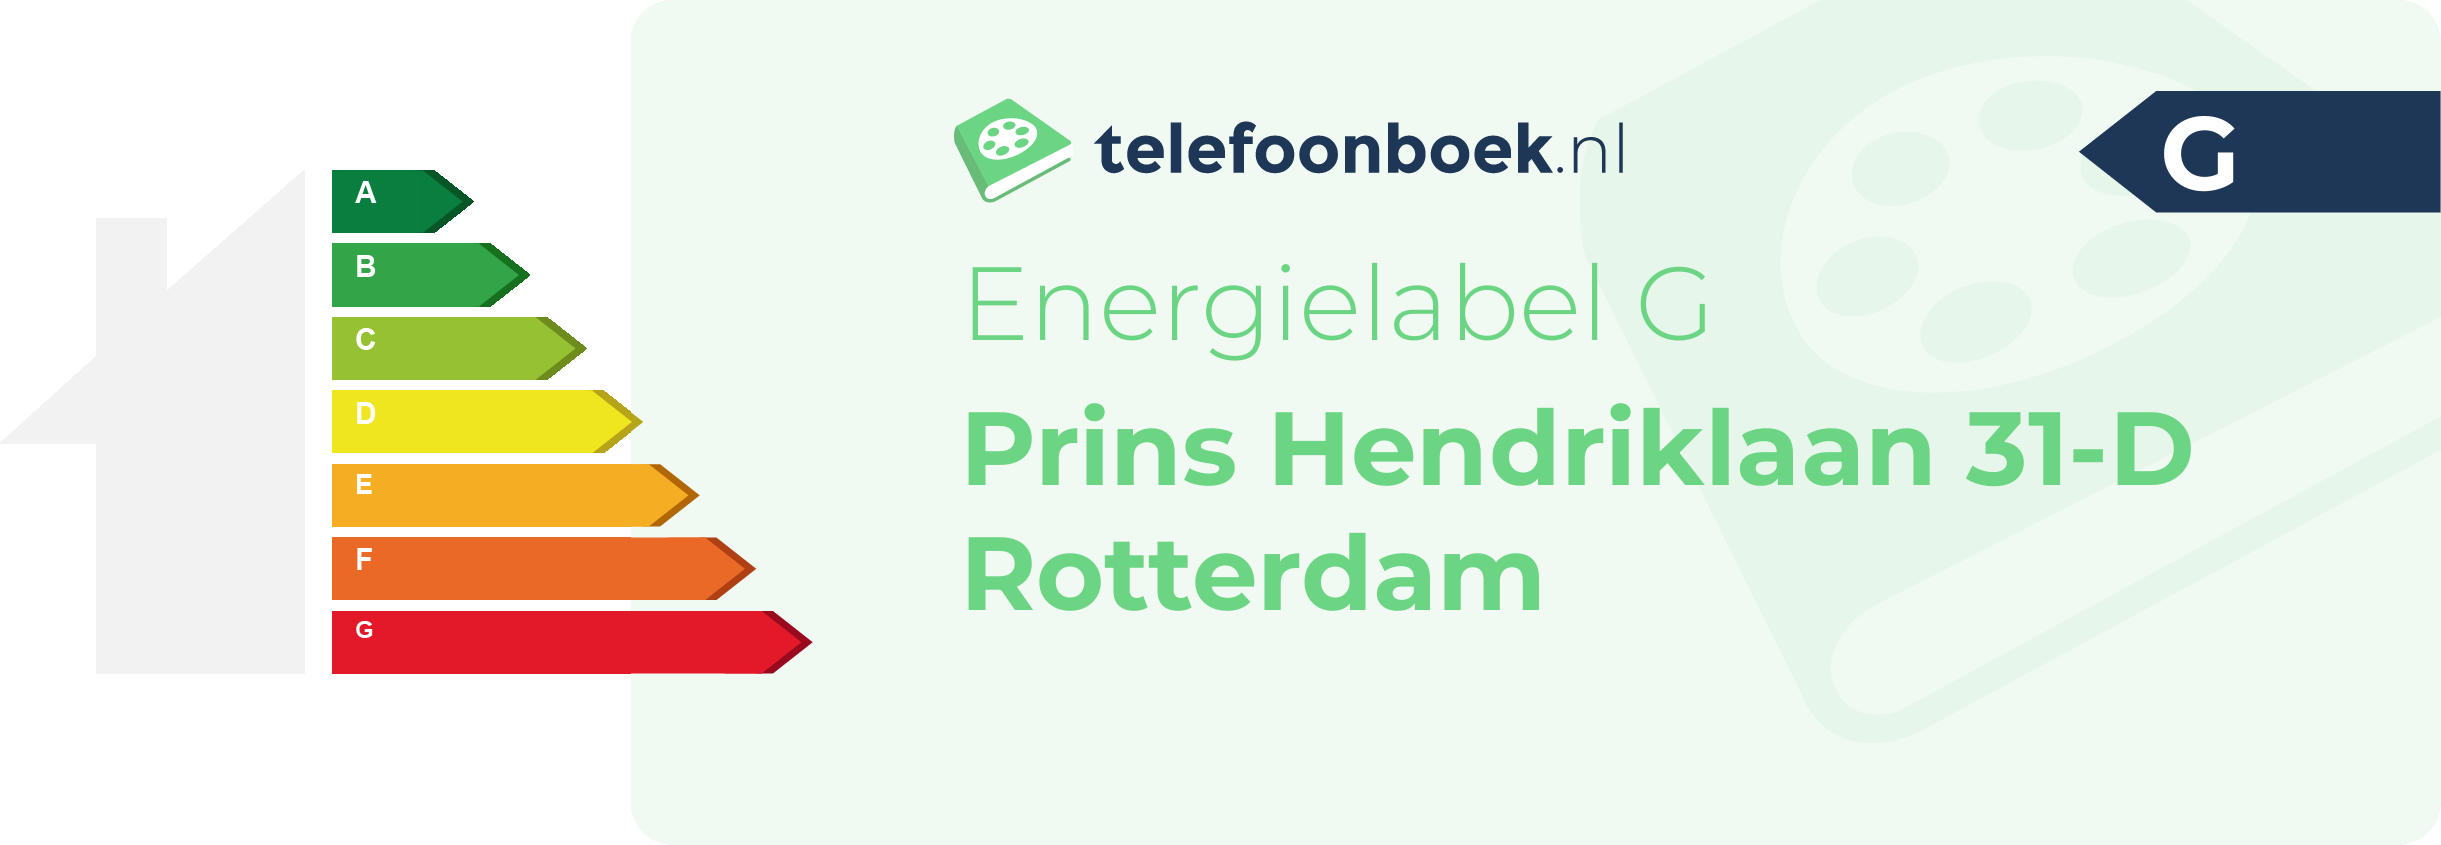 Energielabel Prins Hendriklaan 31-D Rotterdam